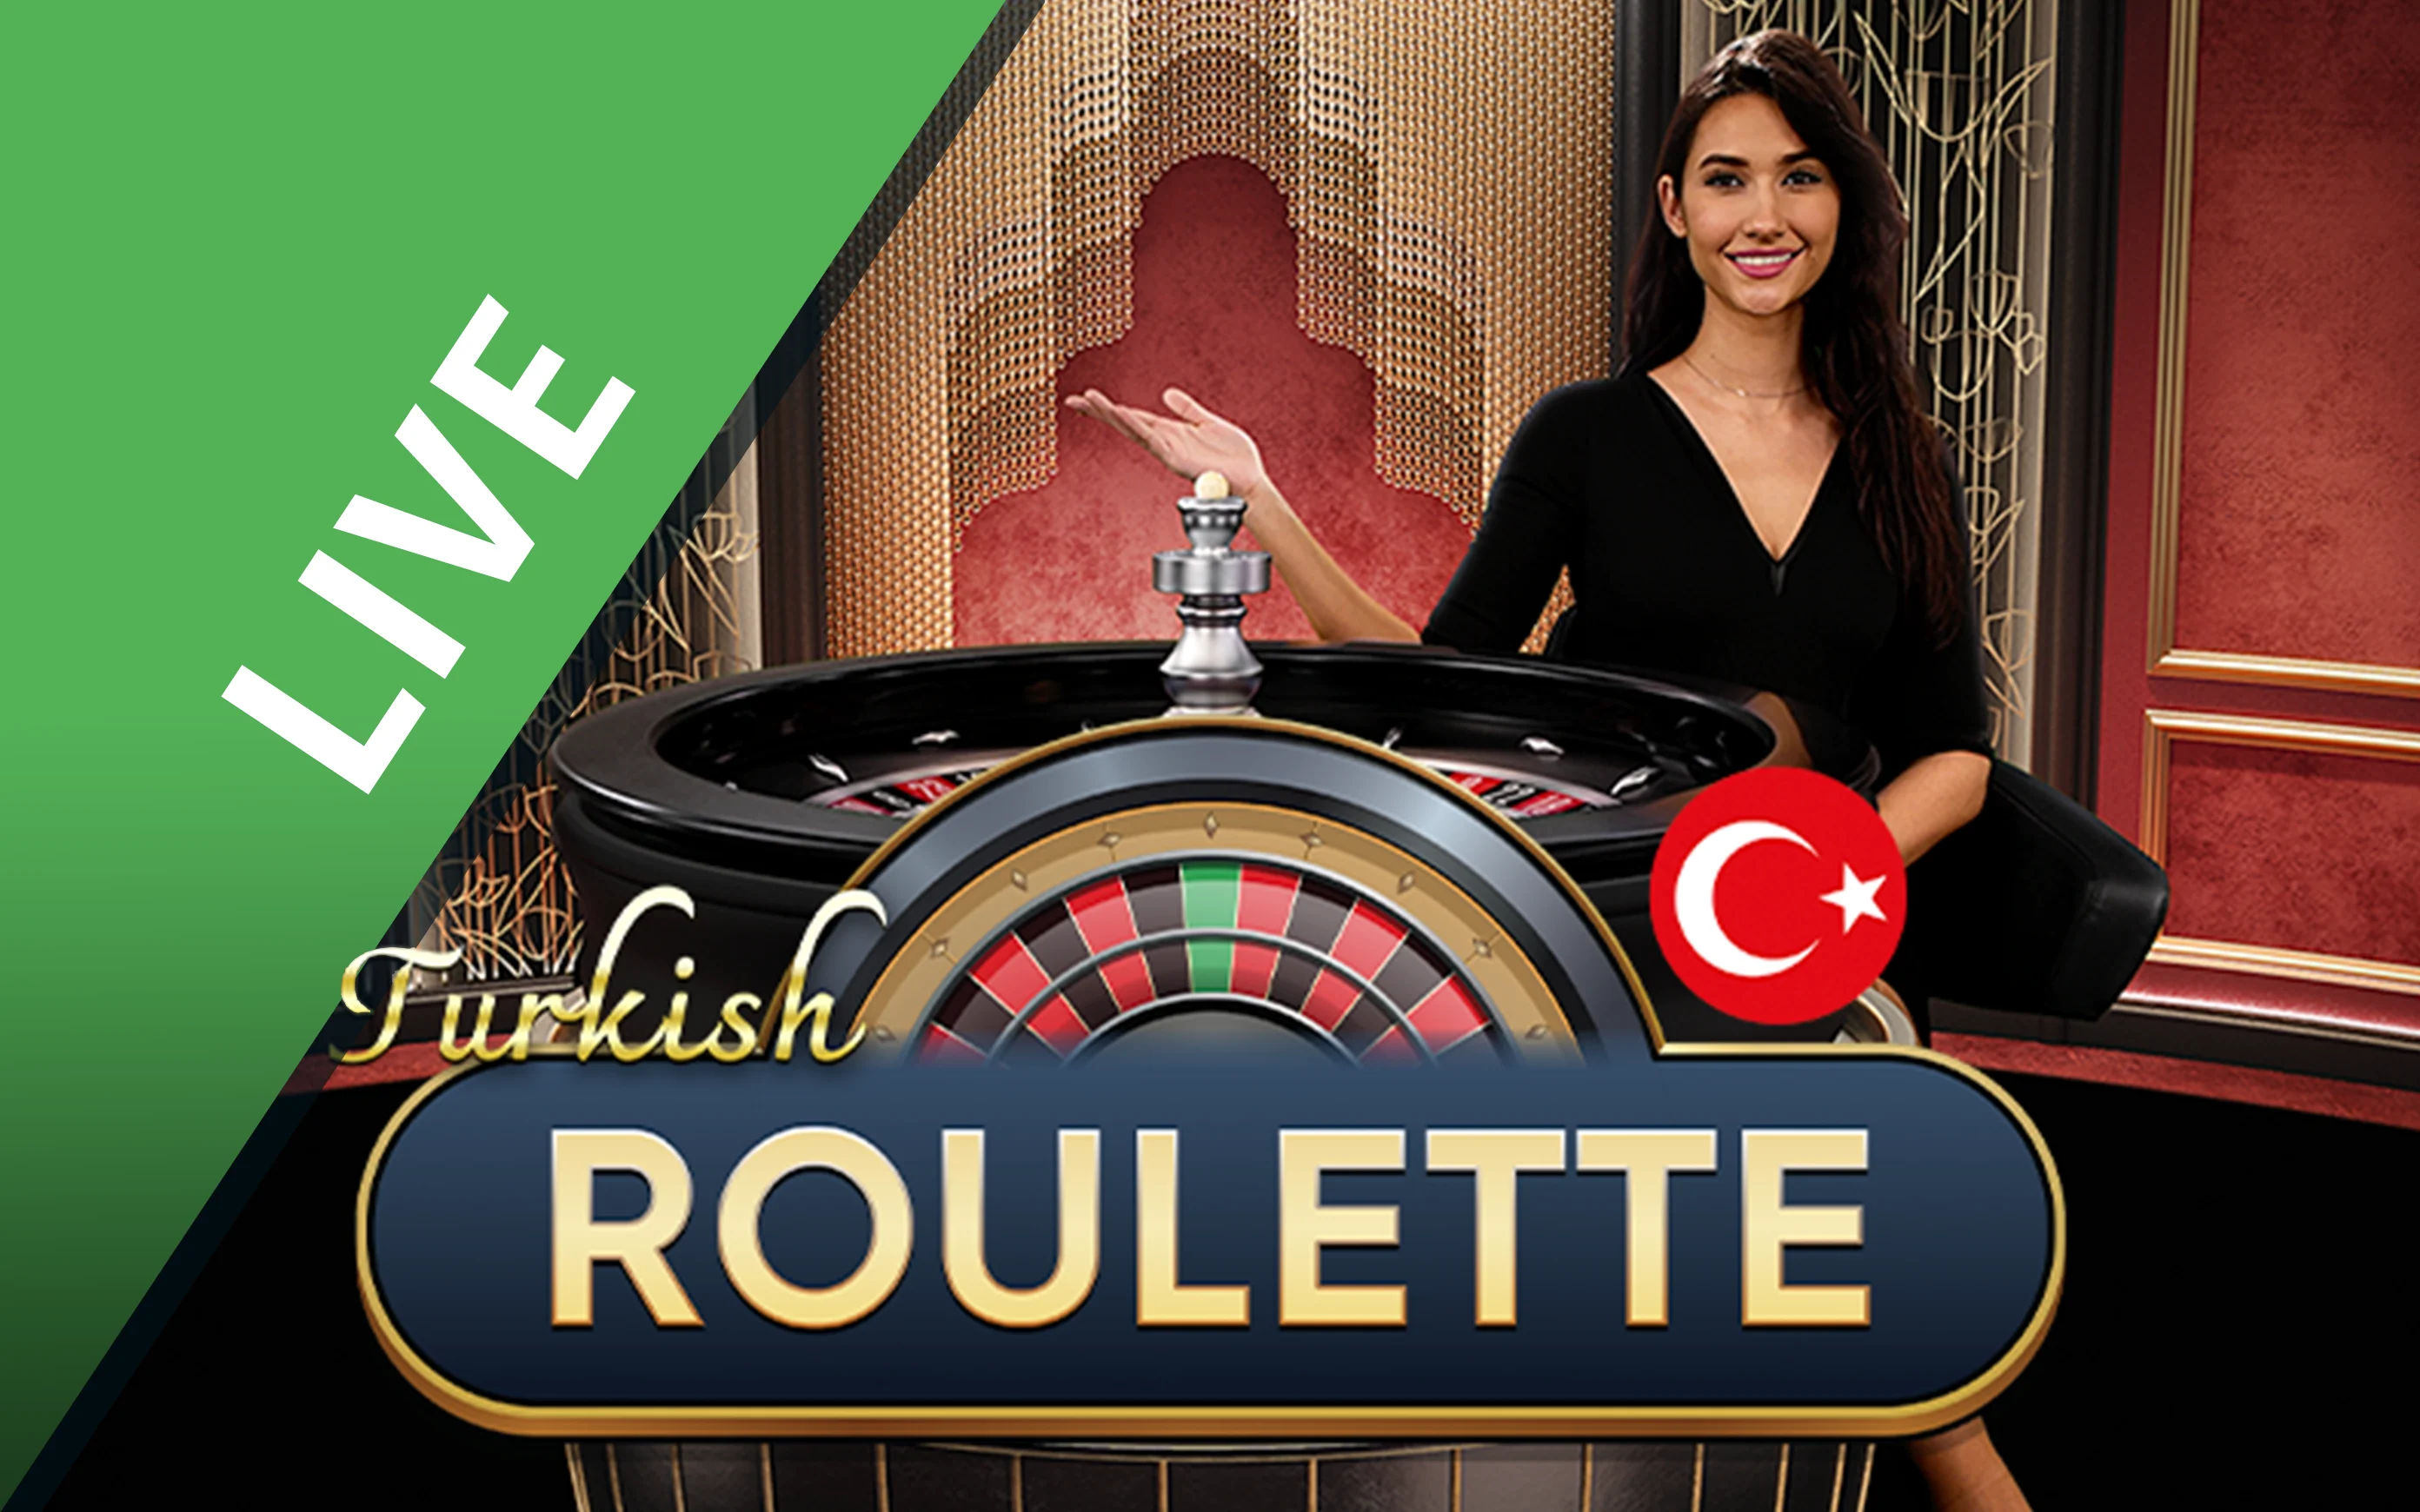 Gioca a Turkish Roulette sul casino online Starcasino.be